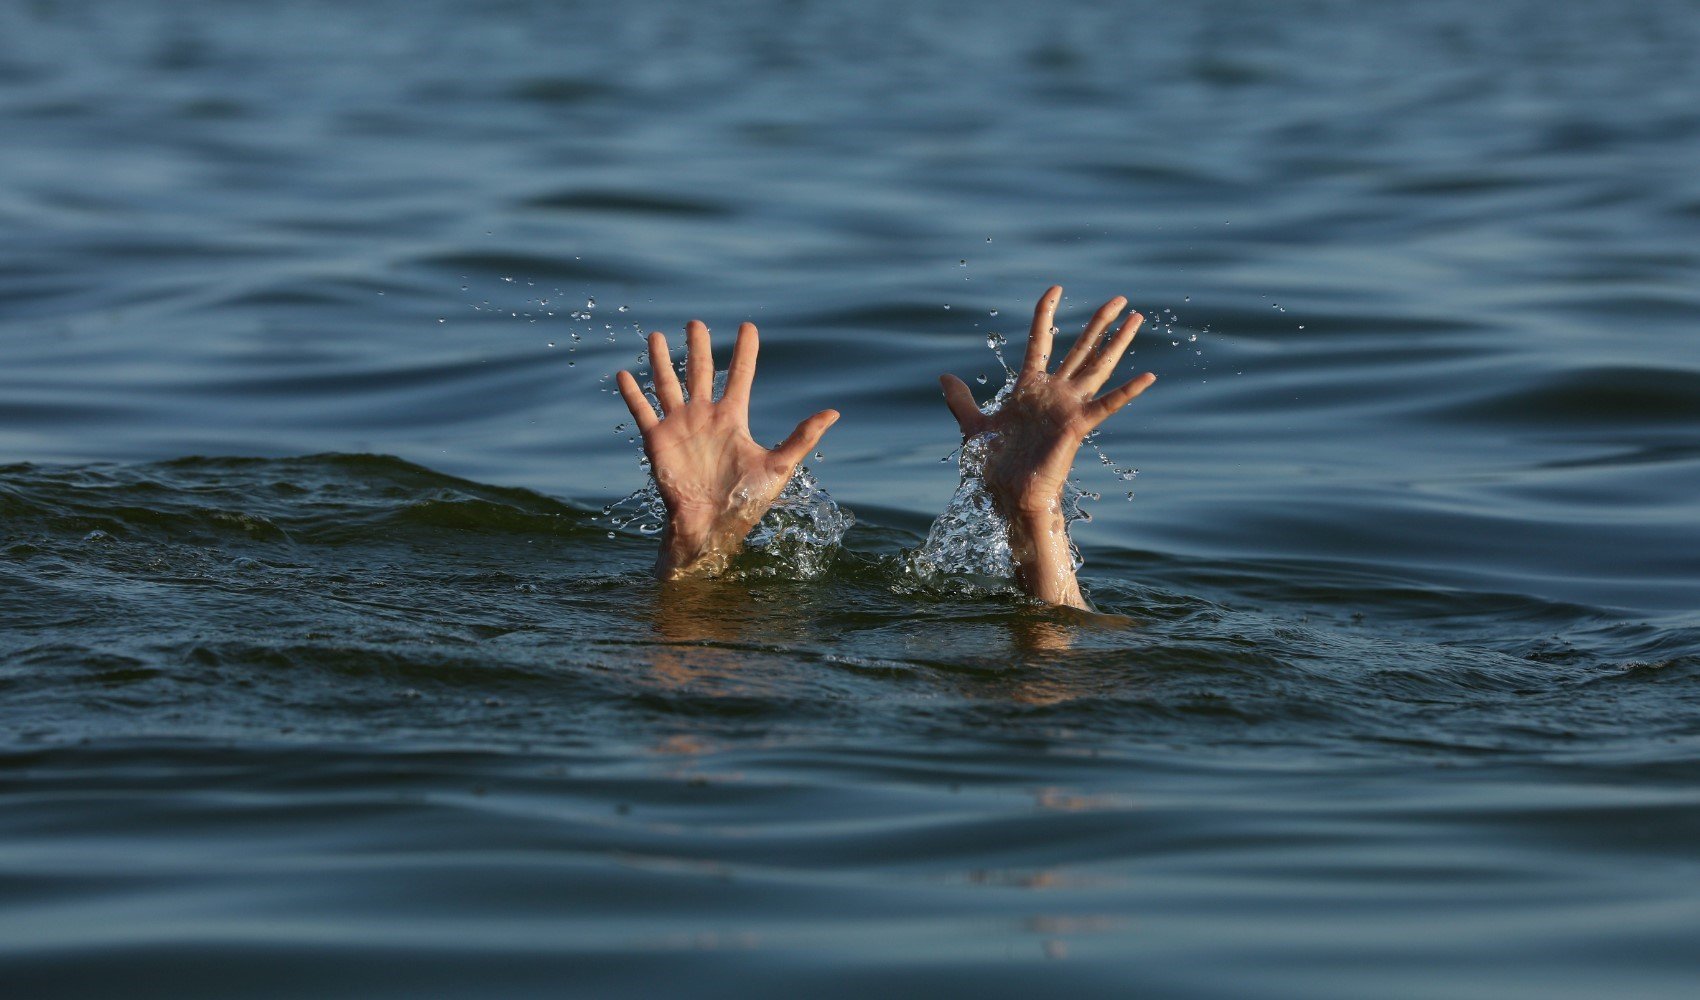 Bursa'da denize giren 16 yaşındaki çocuk boğuldu